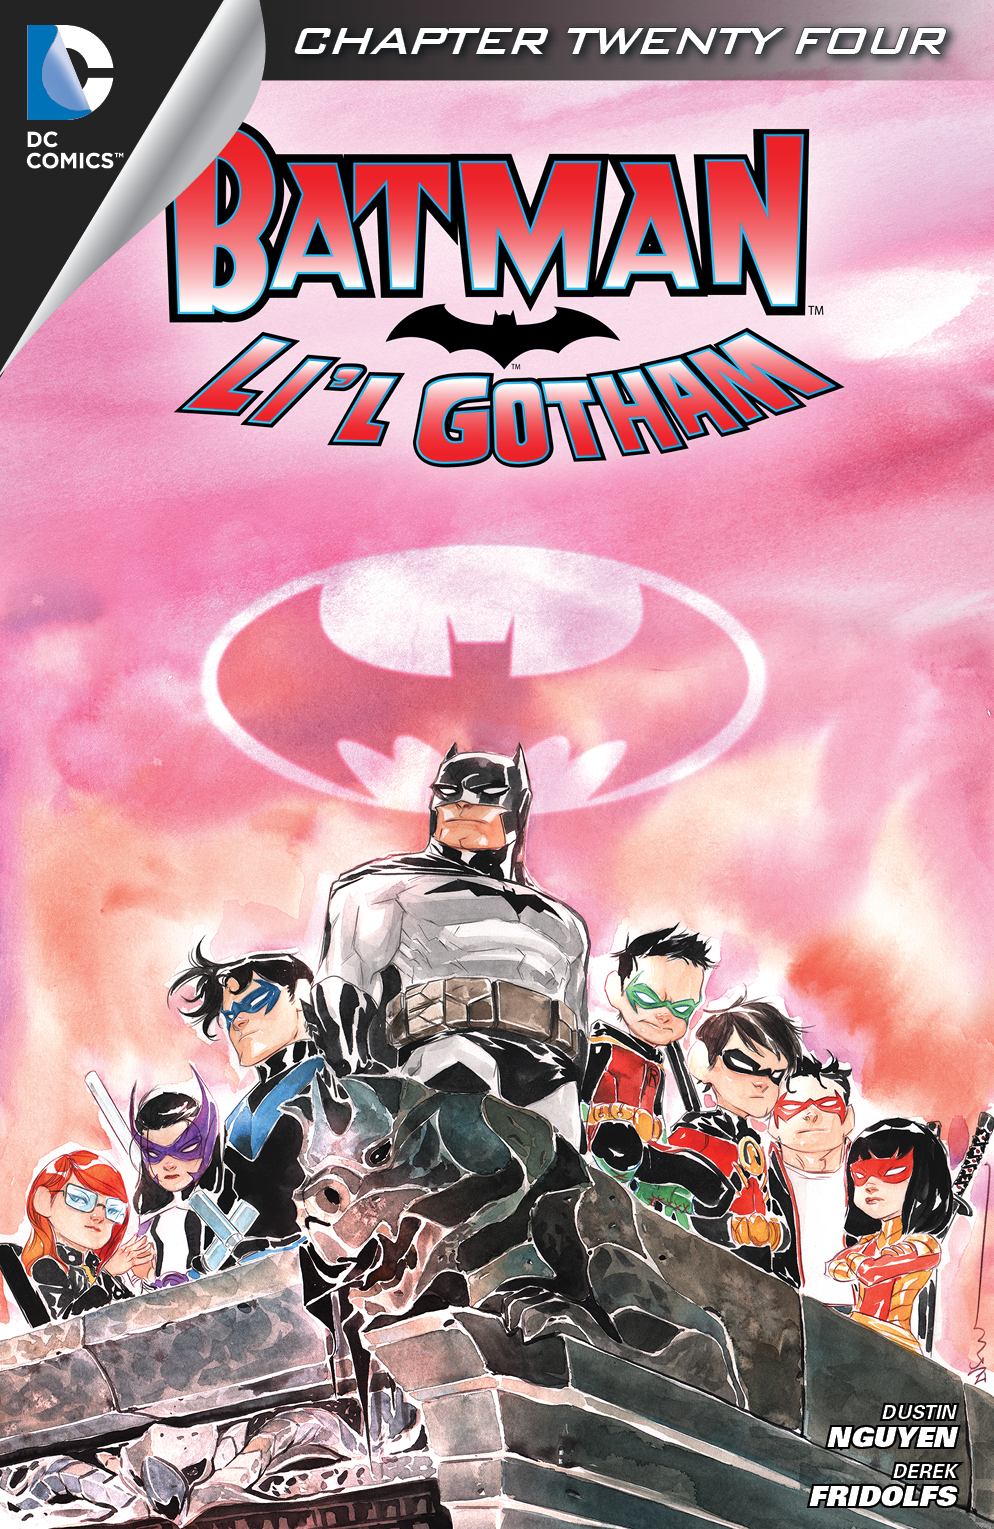 Batman: Li'l Gotham #24 preview images